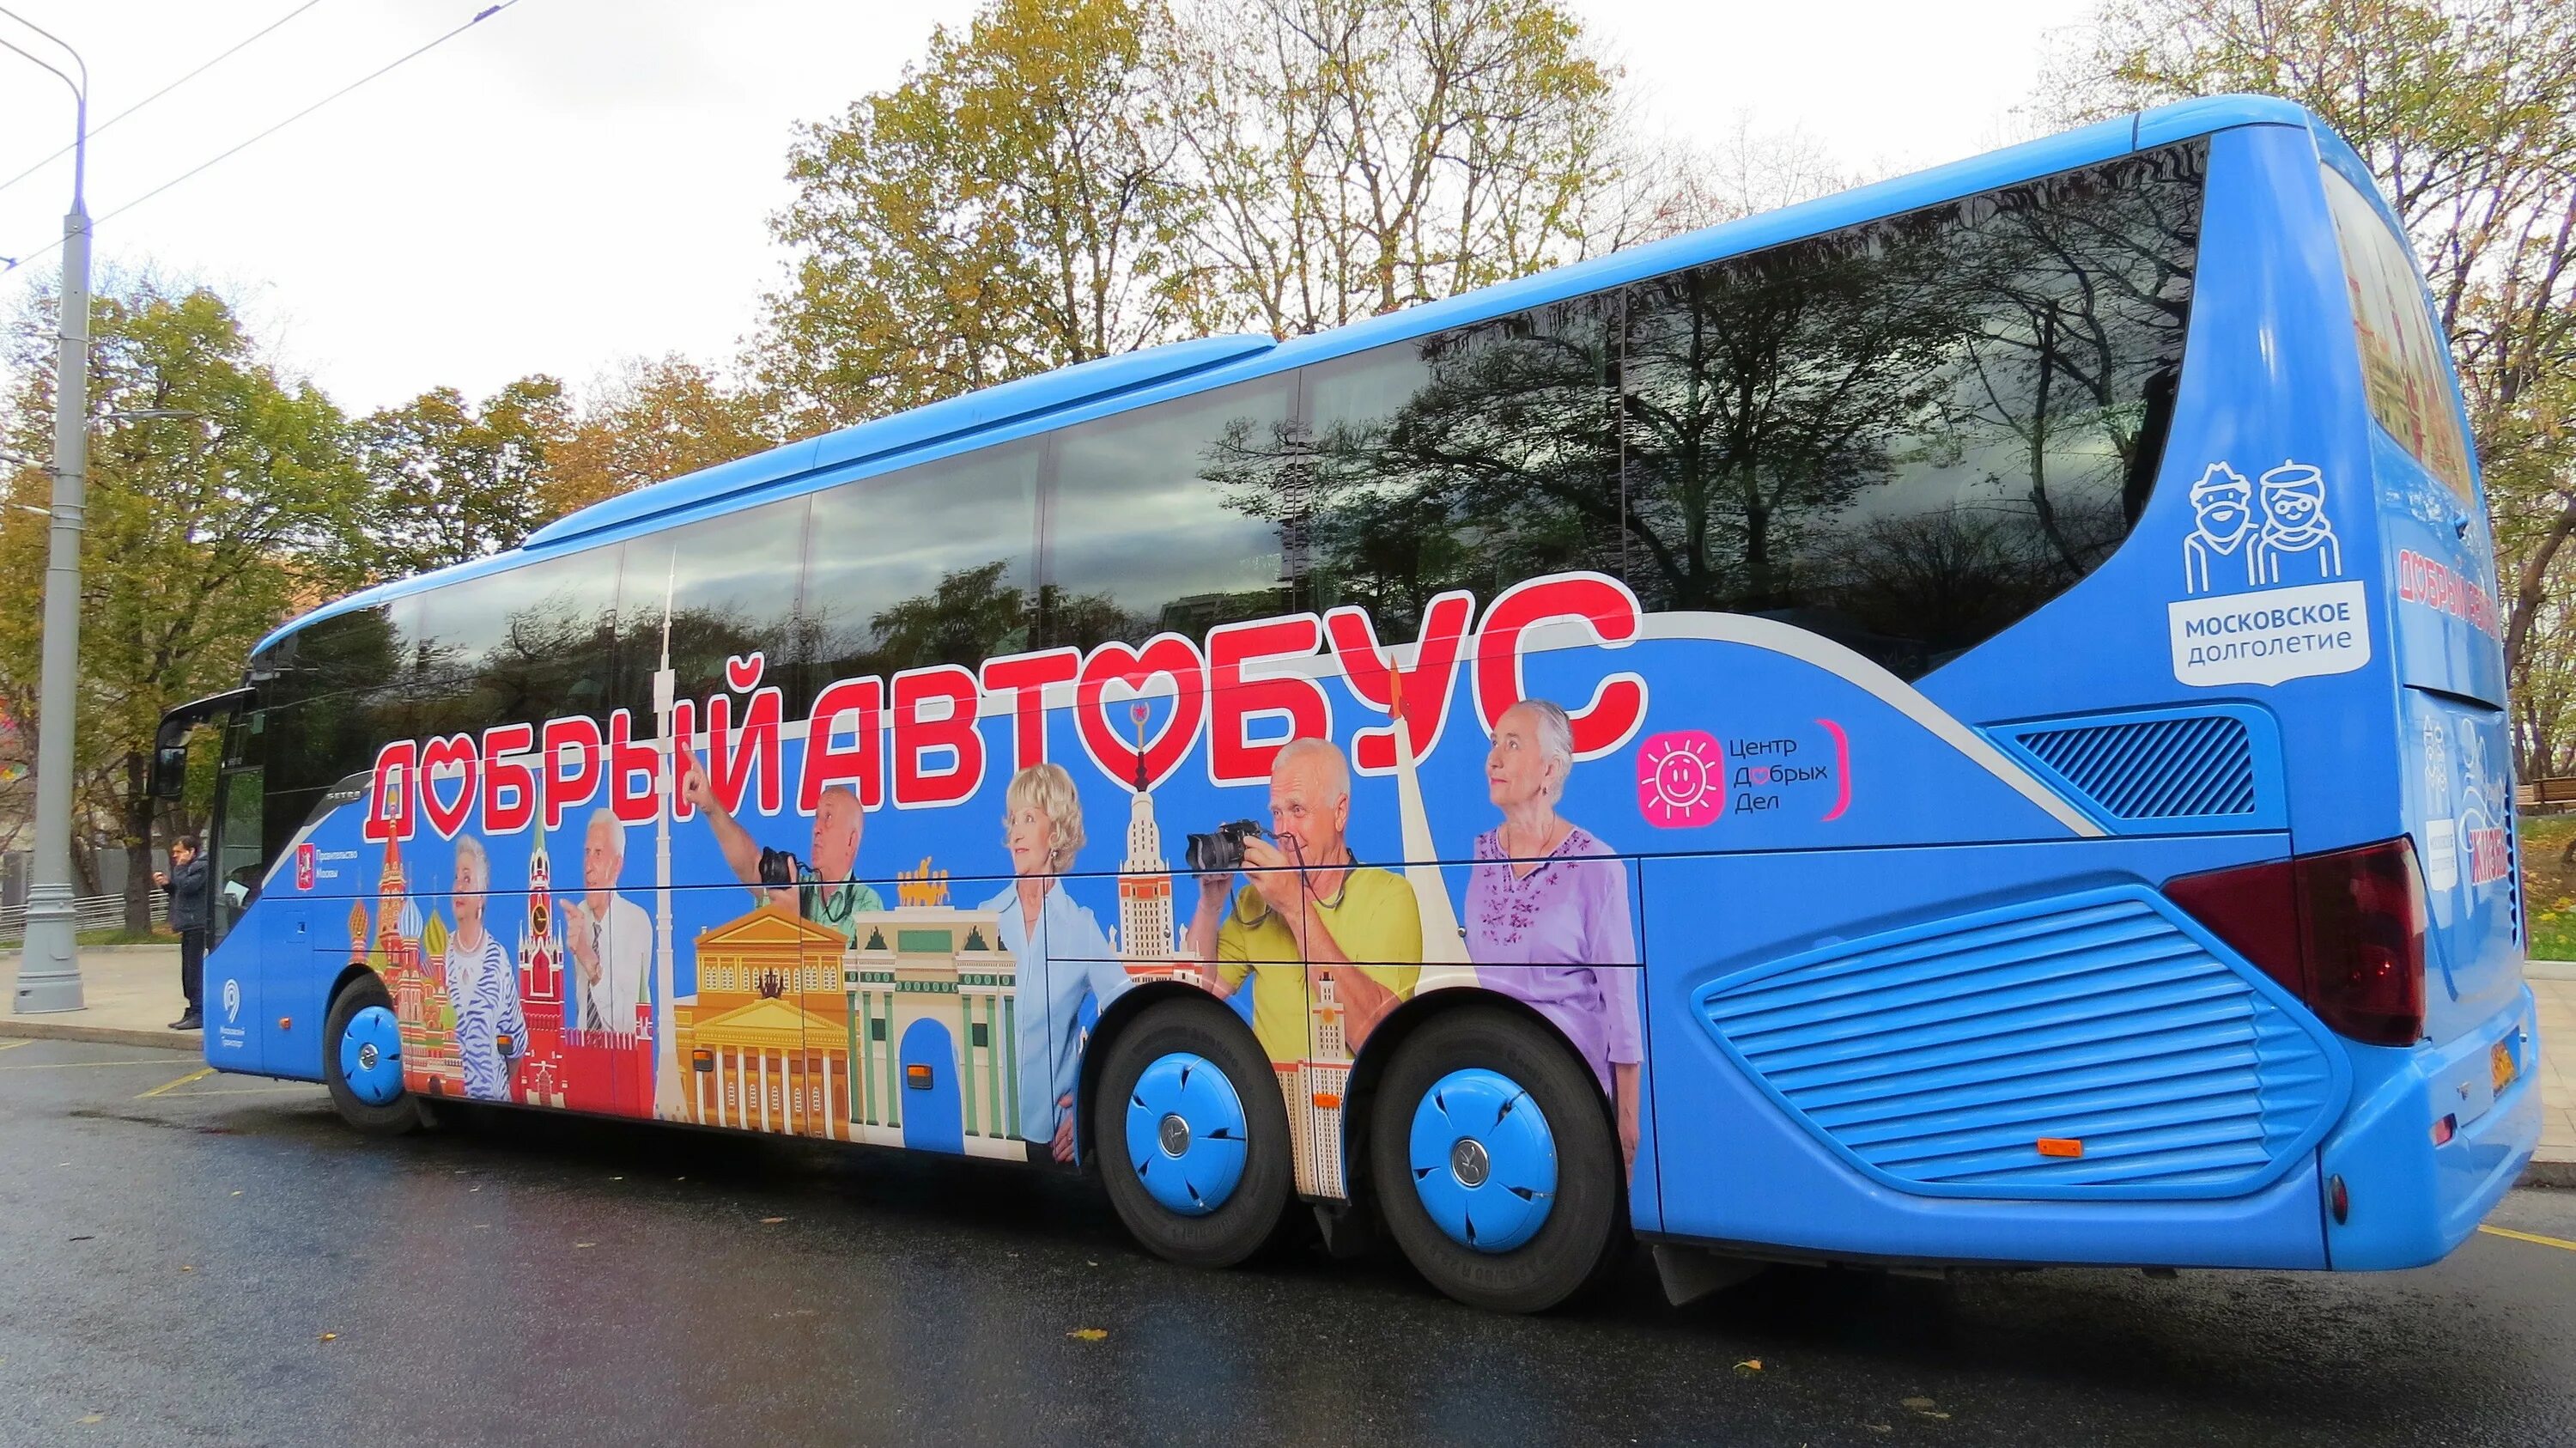 Экскурсионный автобус для детей. Добрый автобус Московское долголетие. Разноцветные автобусы. Детский экскурсионный автобус. Добрый автобус экскурсии.